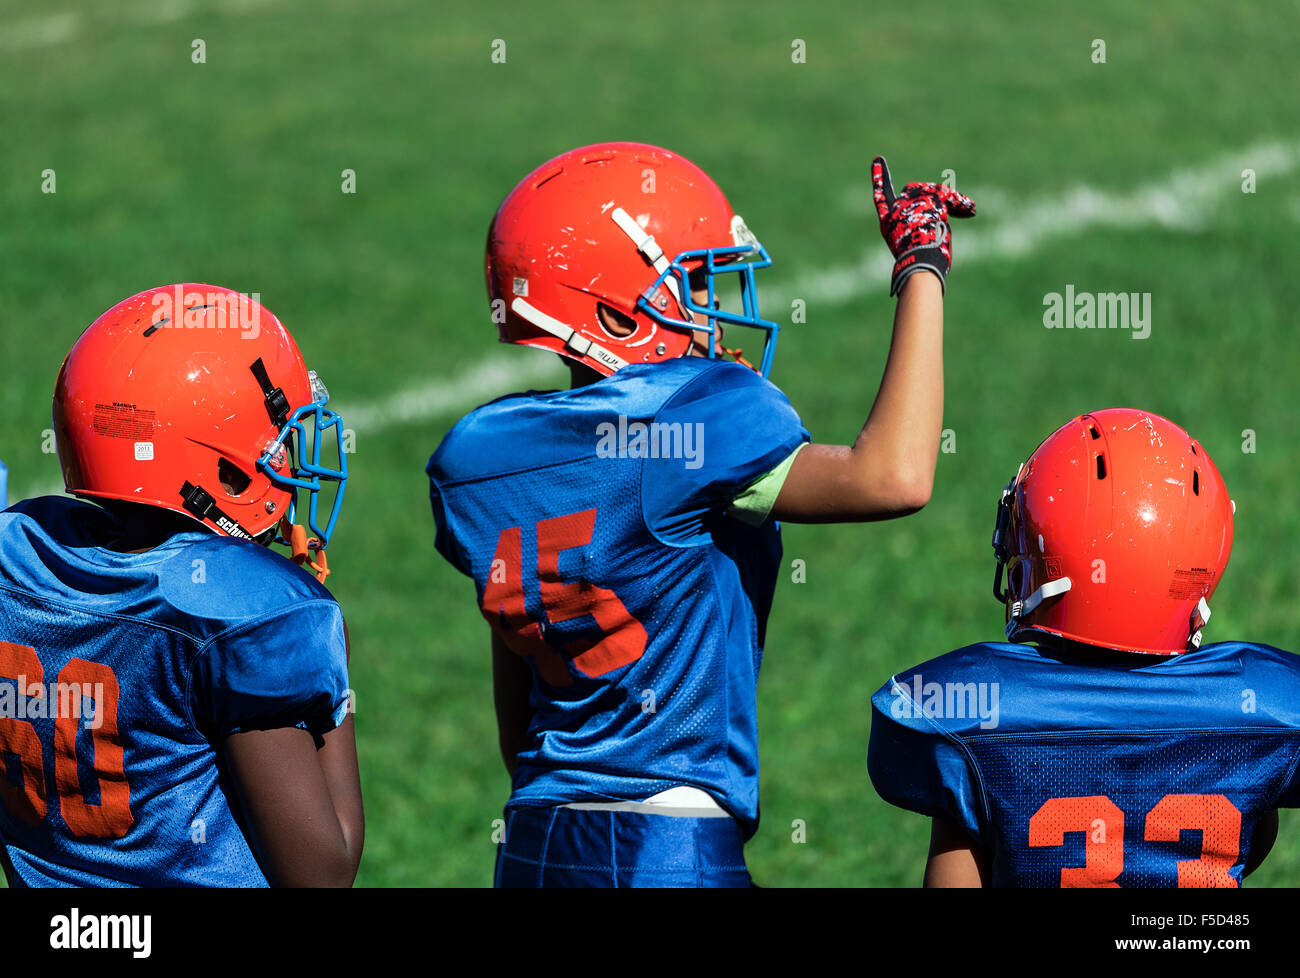 Les jeunes garçons dans les coulisses d'une Pop Warner football game, USA Banque D'Images